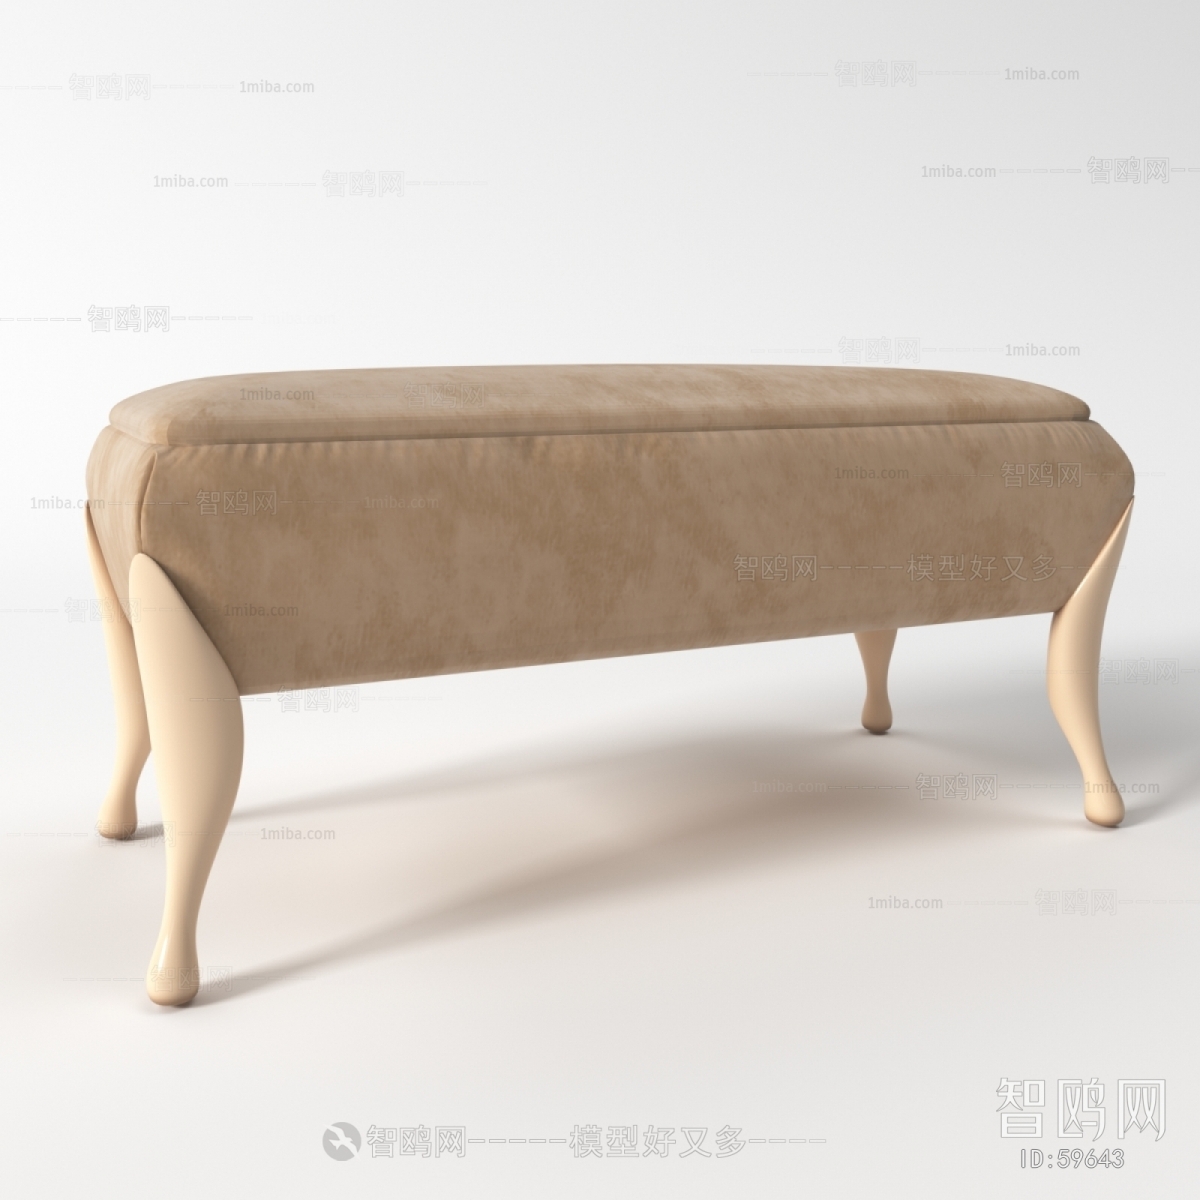 European Style Bench